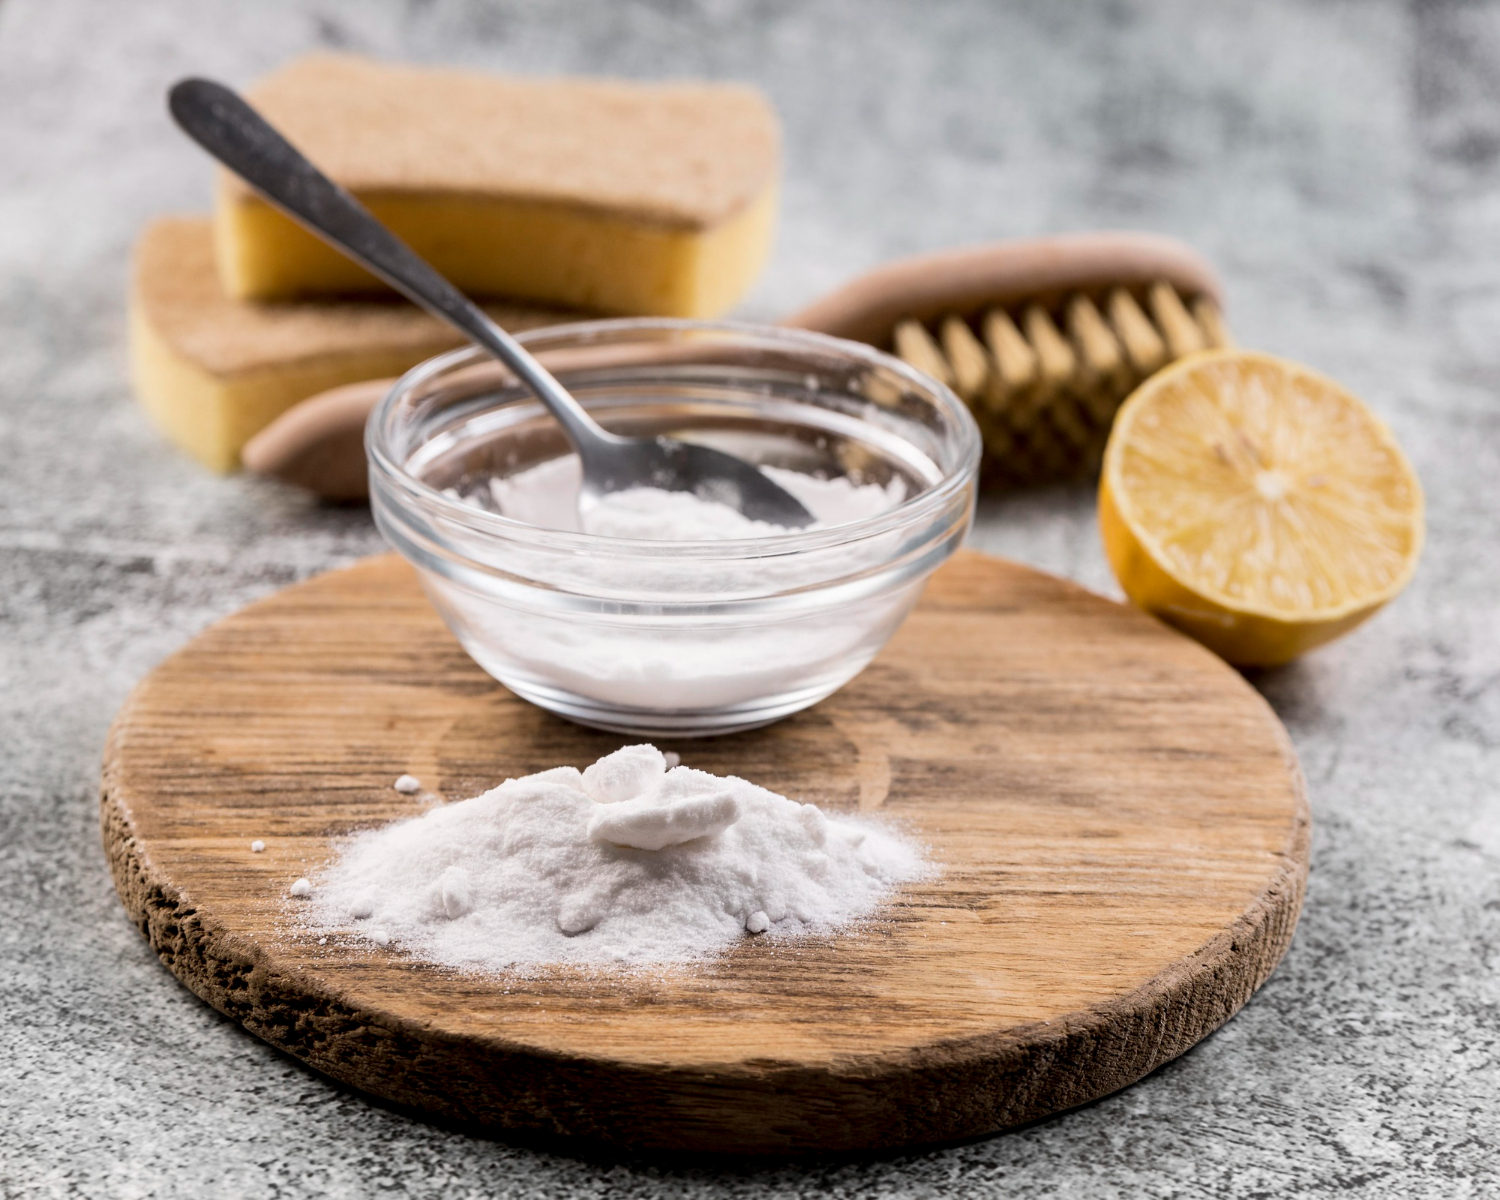 Utilidades SURPREENDENTES para o Bicarbonato de Sódio na cozinha e na limpeza da casa